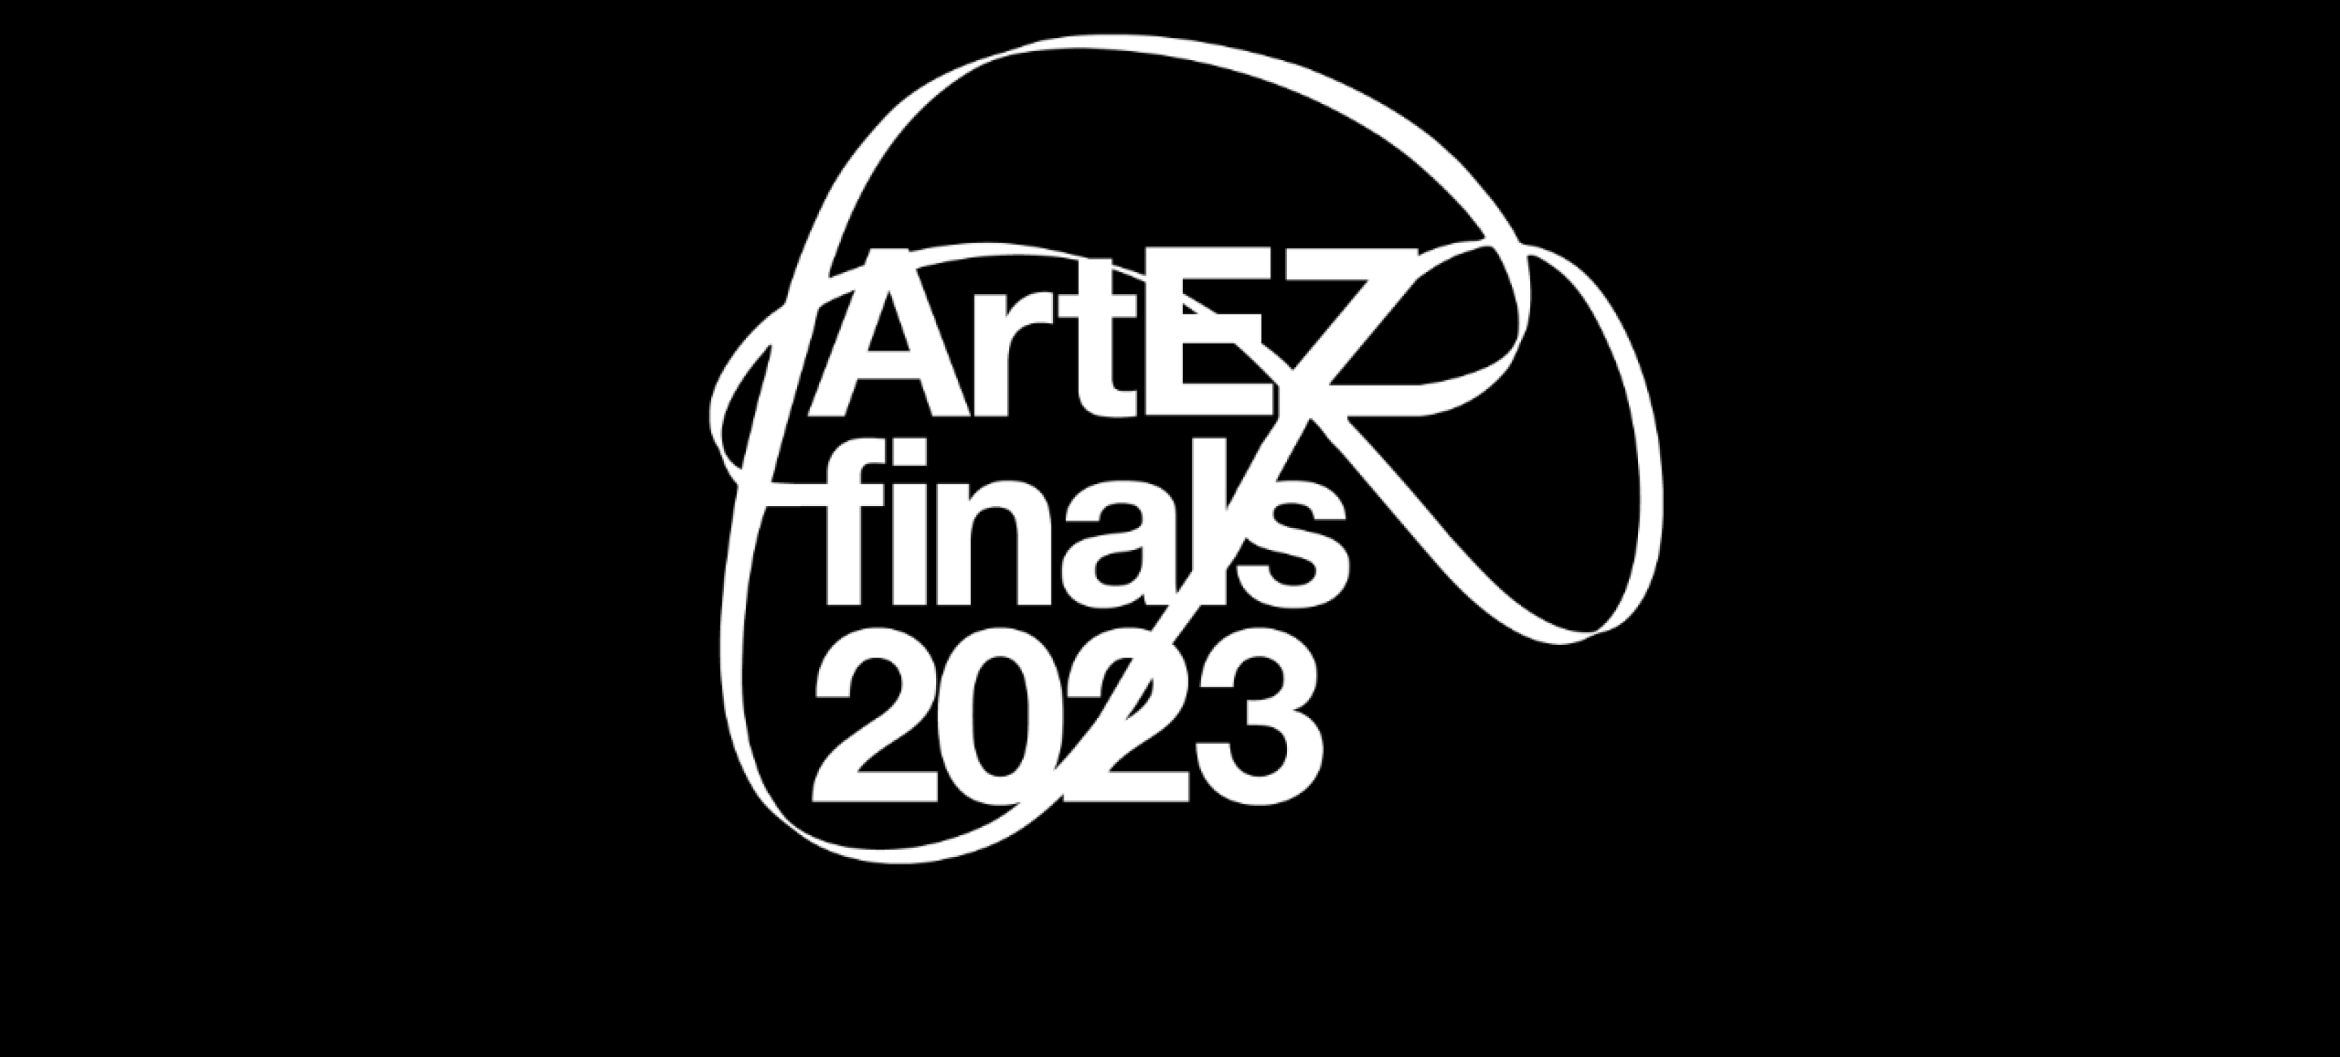 Het is bijna zover: ArtEZ finals 2023!